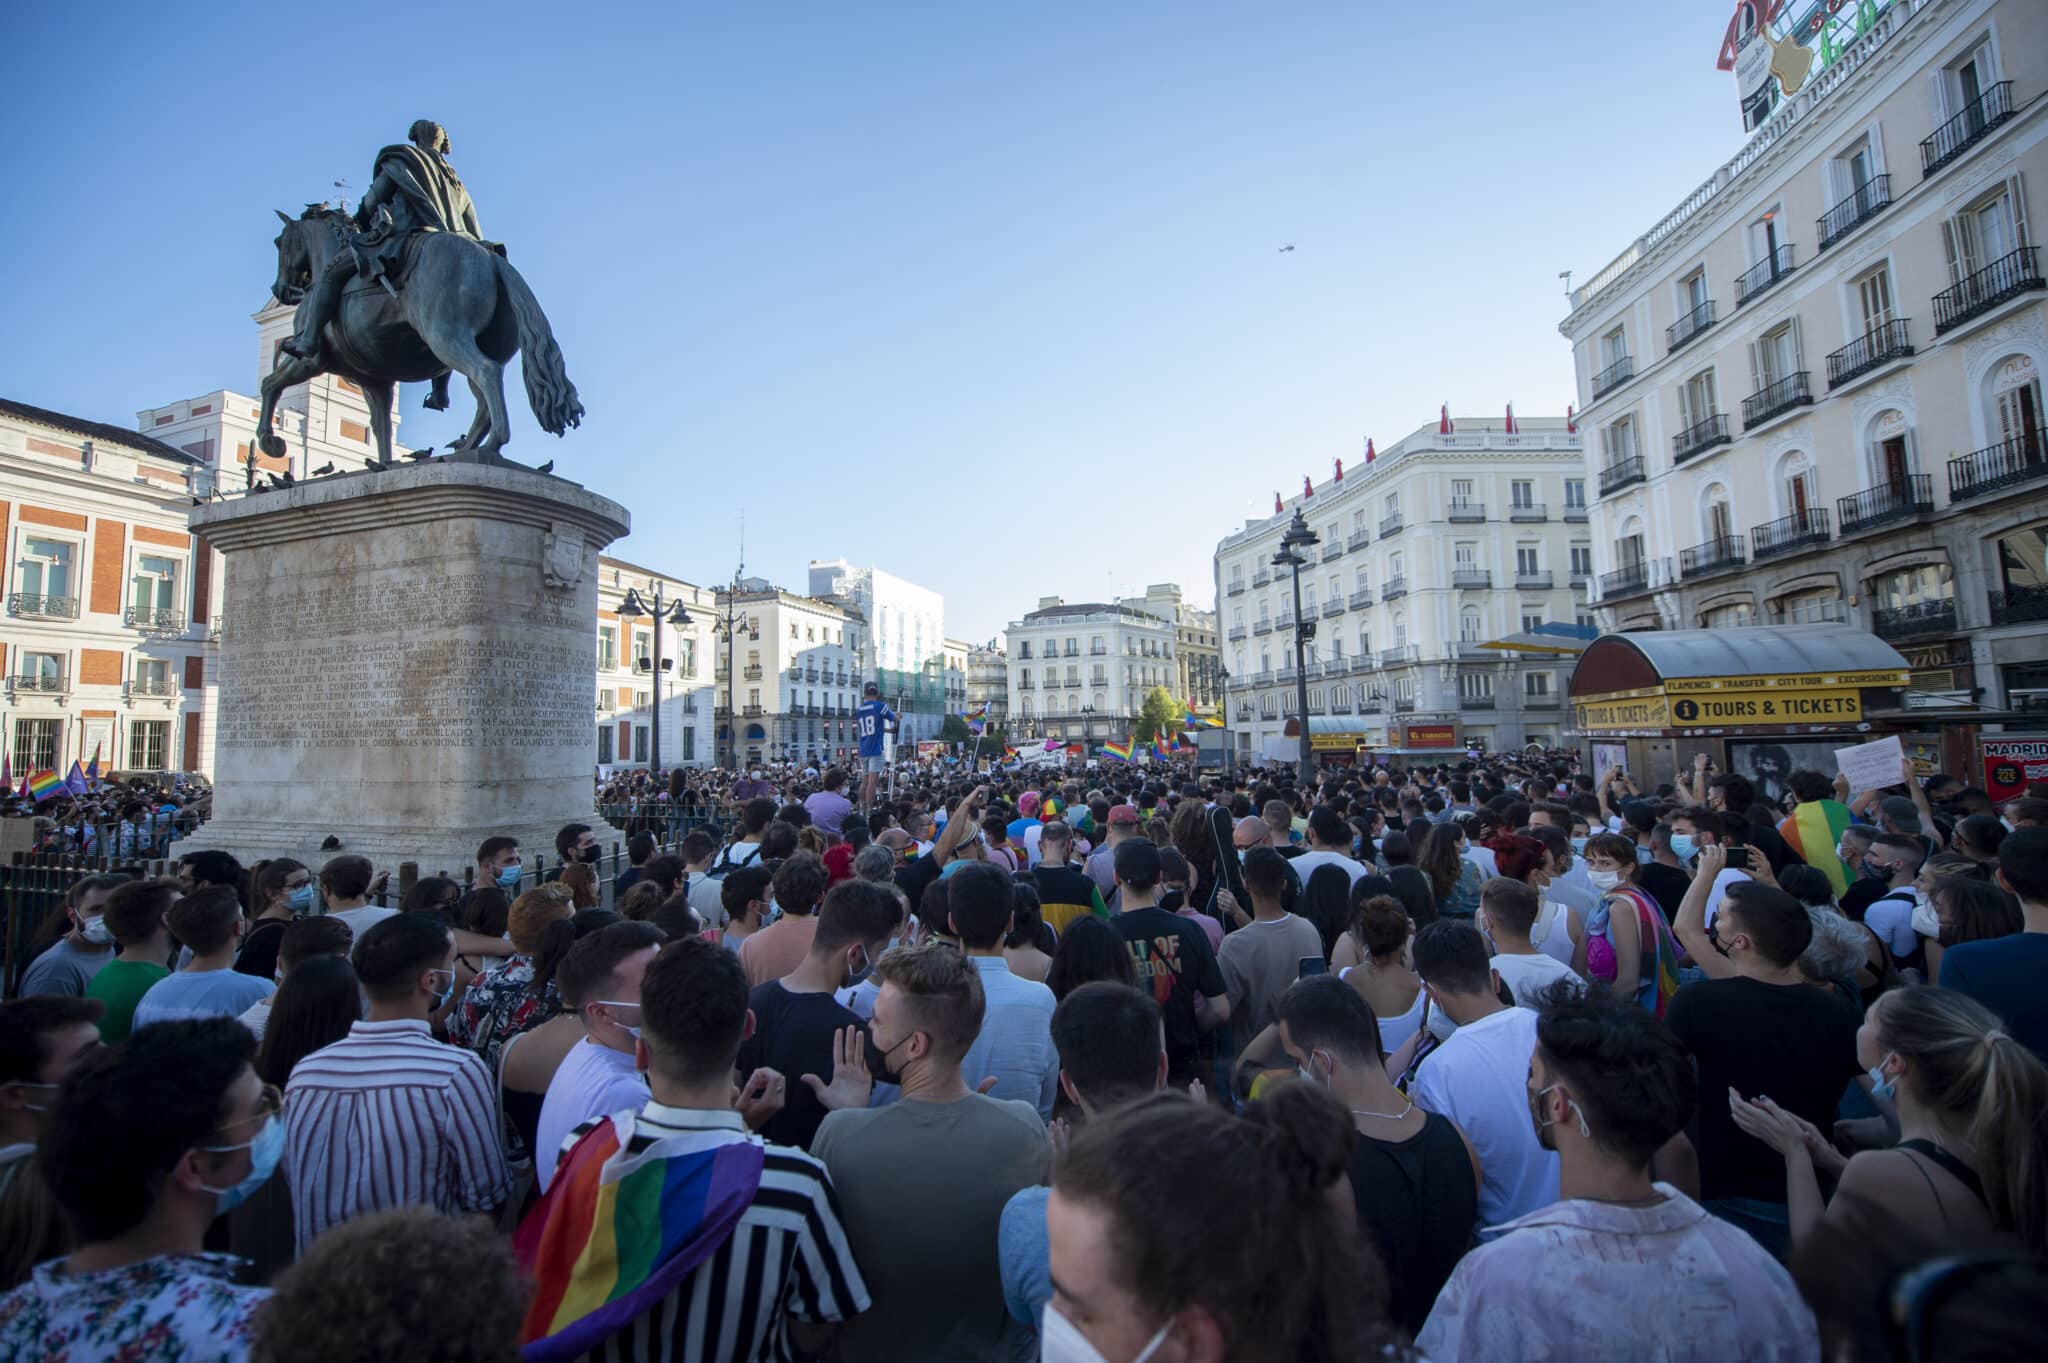 Cientos de personas durante una manifestación para condenar el asesinato de un joven de 24 años el pasado sábado en A Coruña debido a una paliza, a 5 de julio de 2021, en Madrid, (España). Bajo el lema, #JusticiaParaSamuel, los asistentes quieren mostrar su repulsa al asesinato del joven Samuel por una paliza propinada por un grupo de personas la noche del sábado 3 de julio.